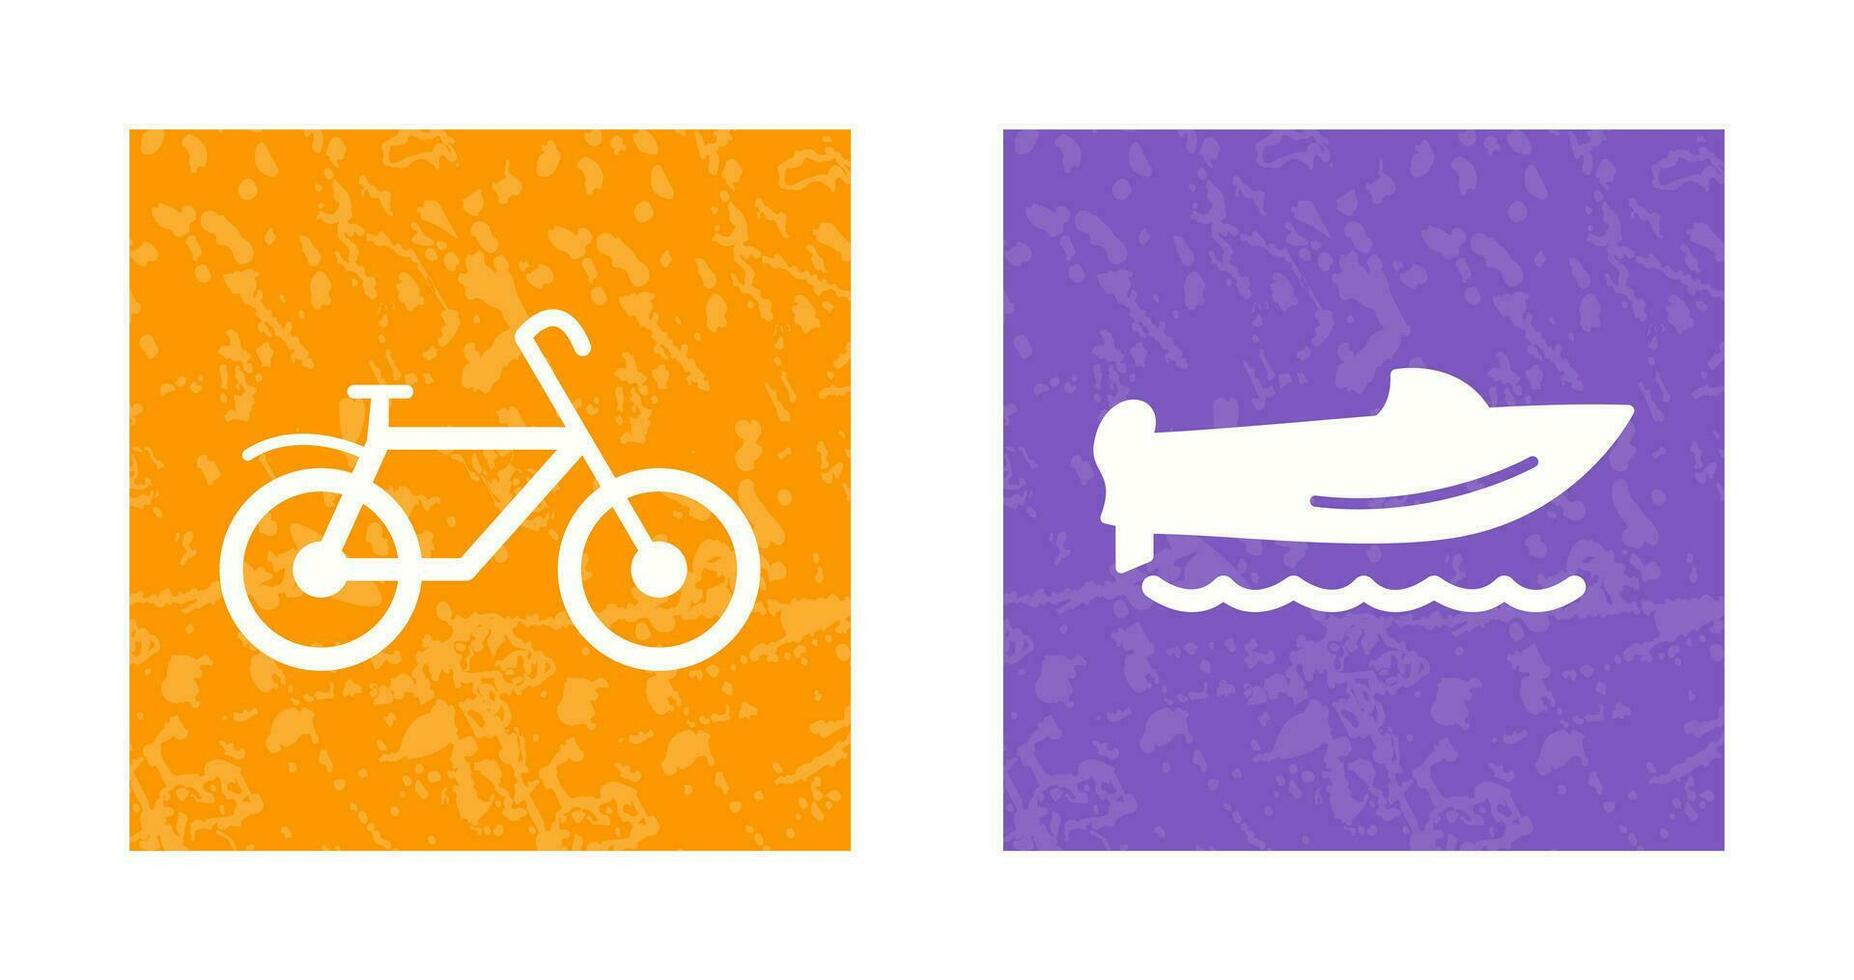 bicicletta e velocità barca icona vettore